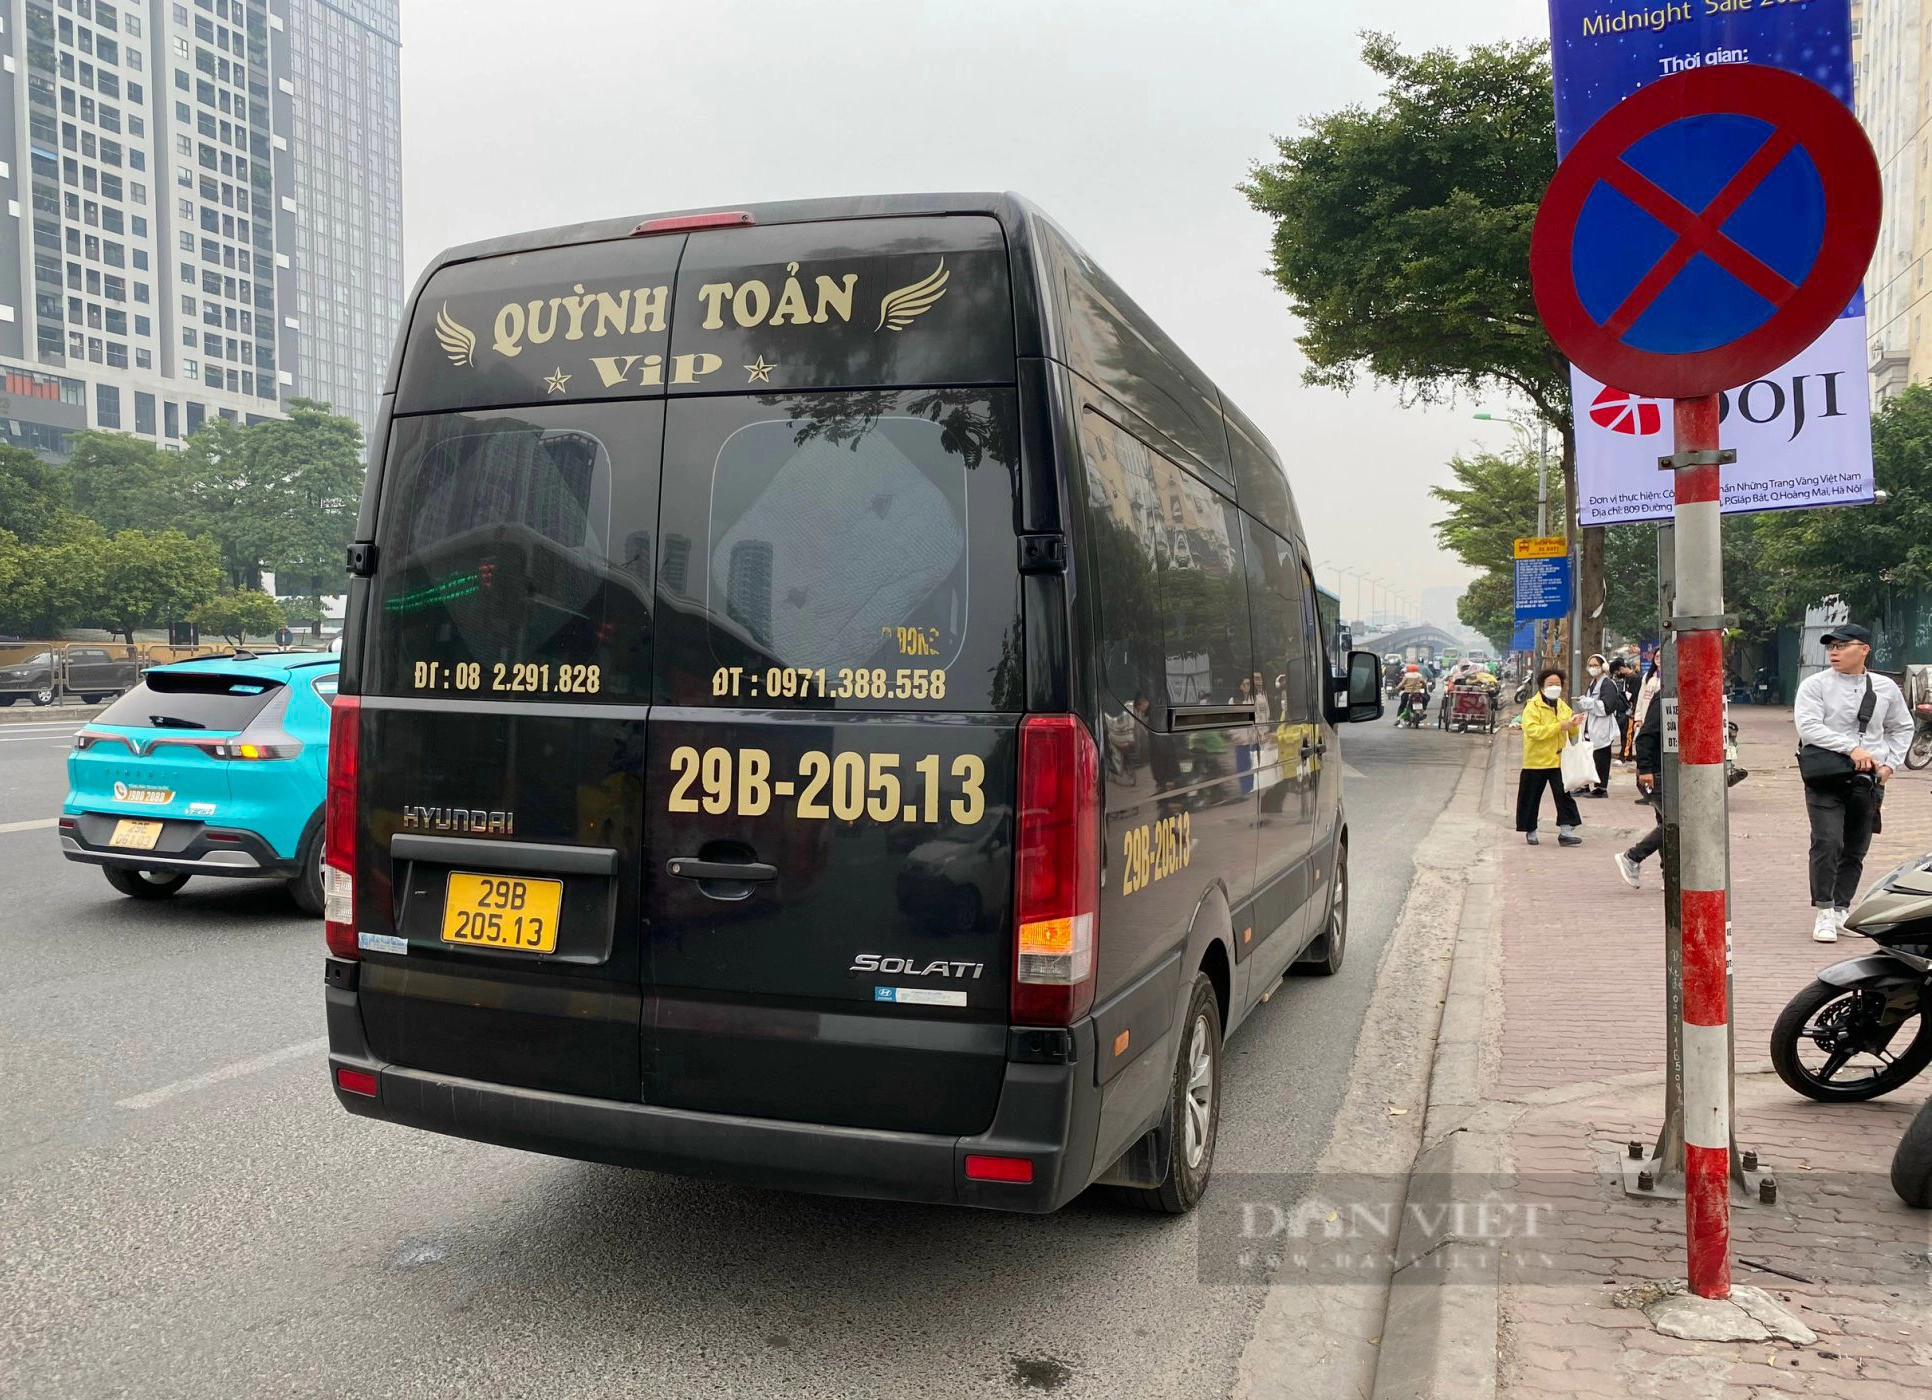 CSGT Hà Nội xử lý hàng loạt xe đón khách sai quy định - Ảnh 2.